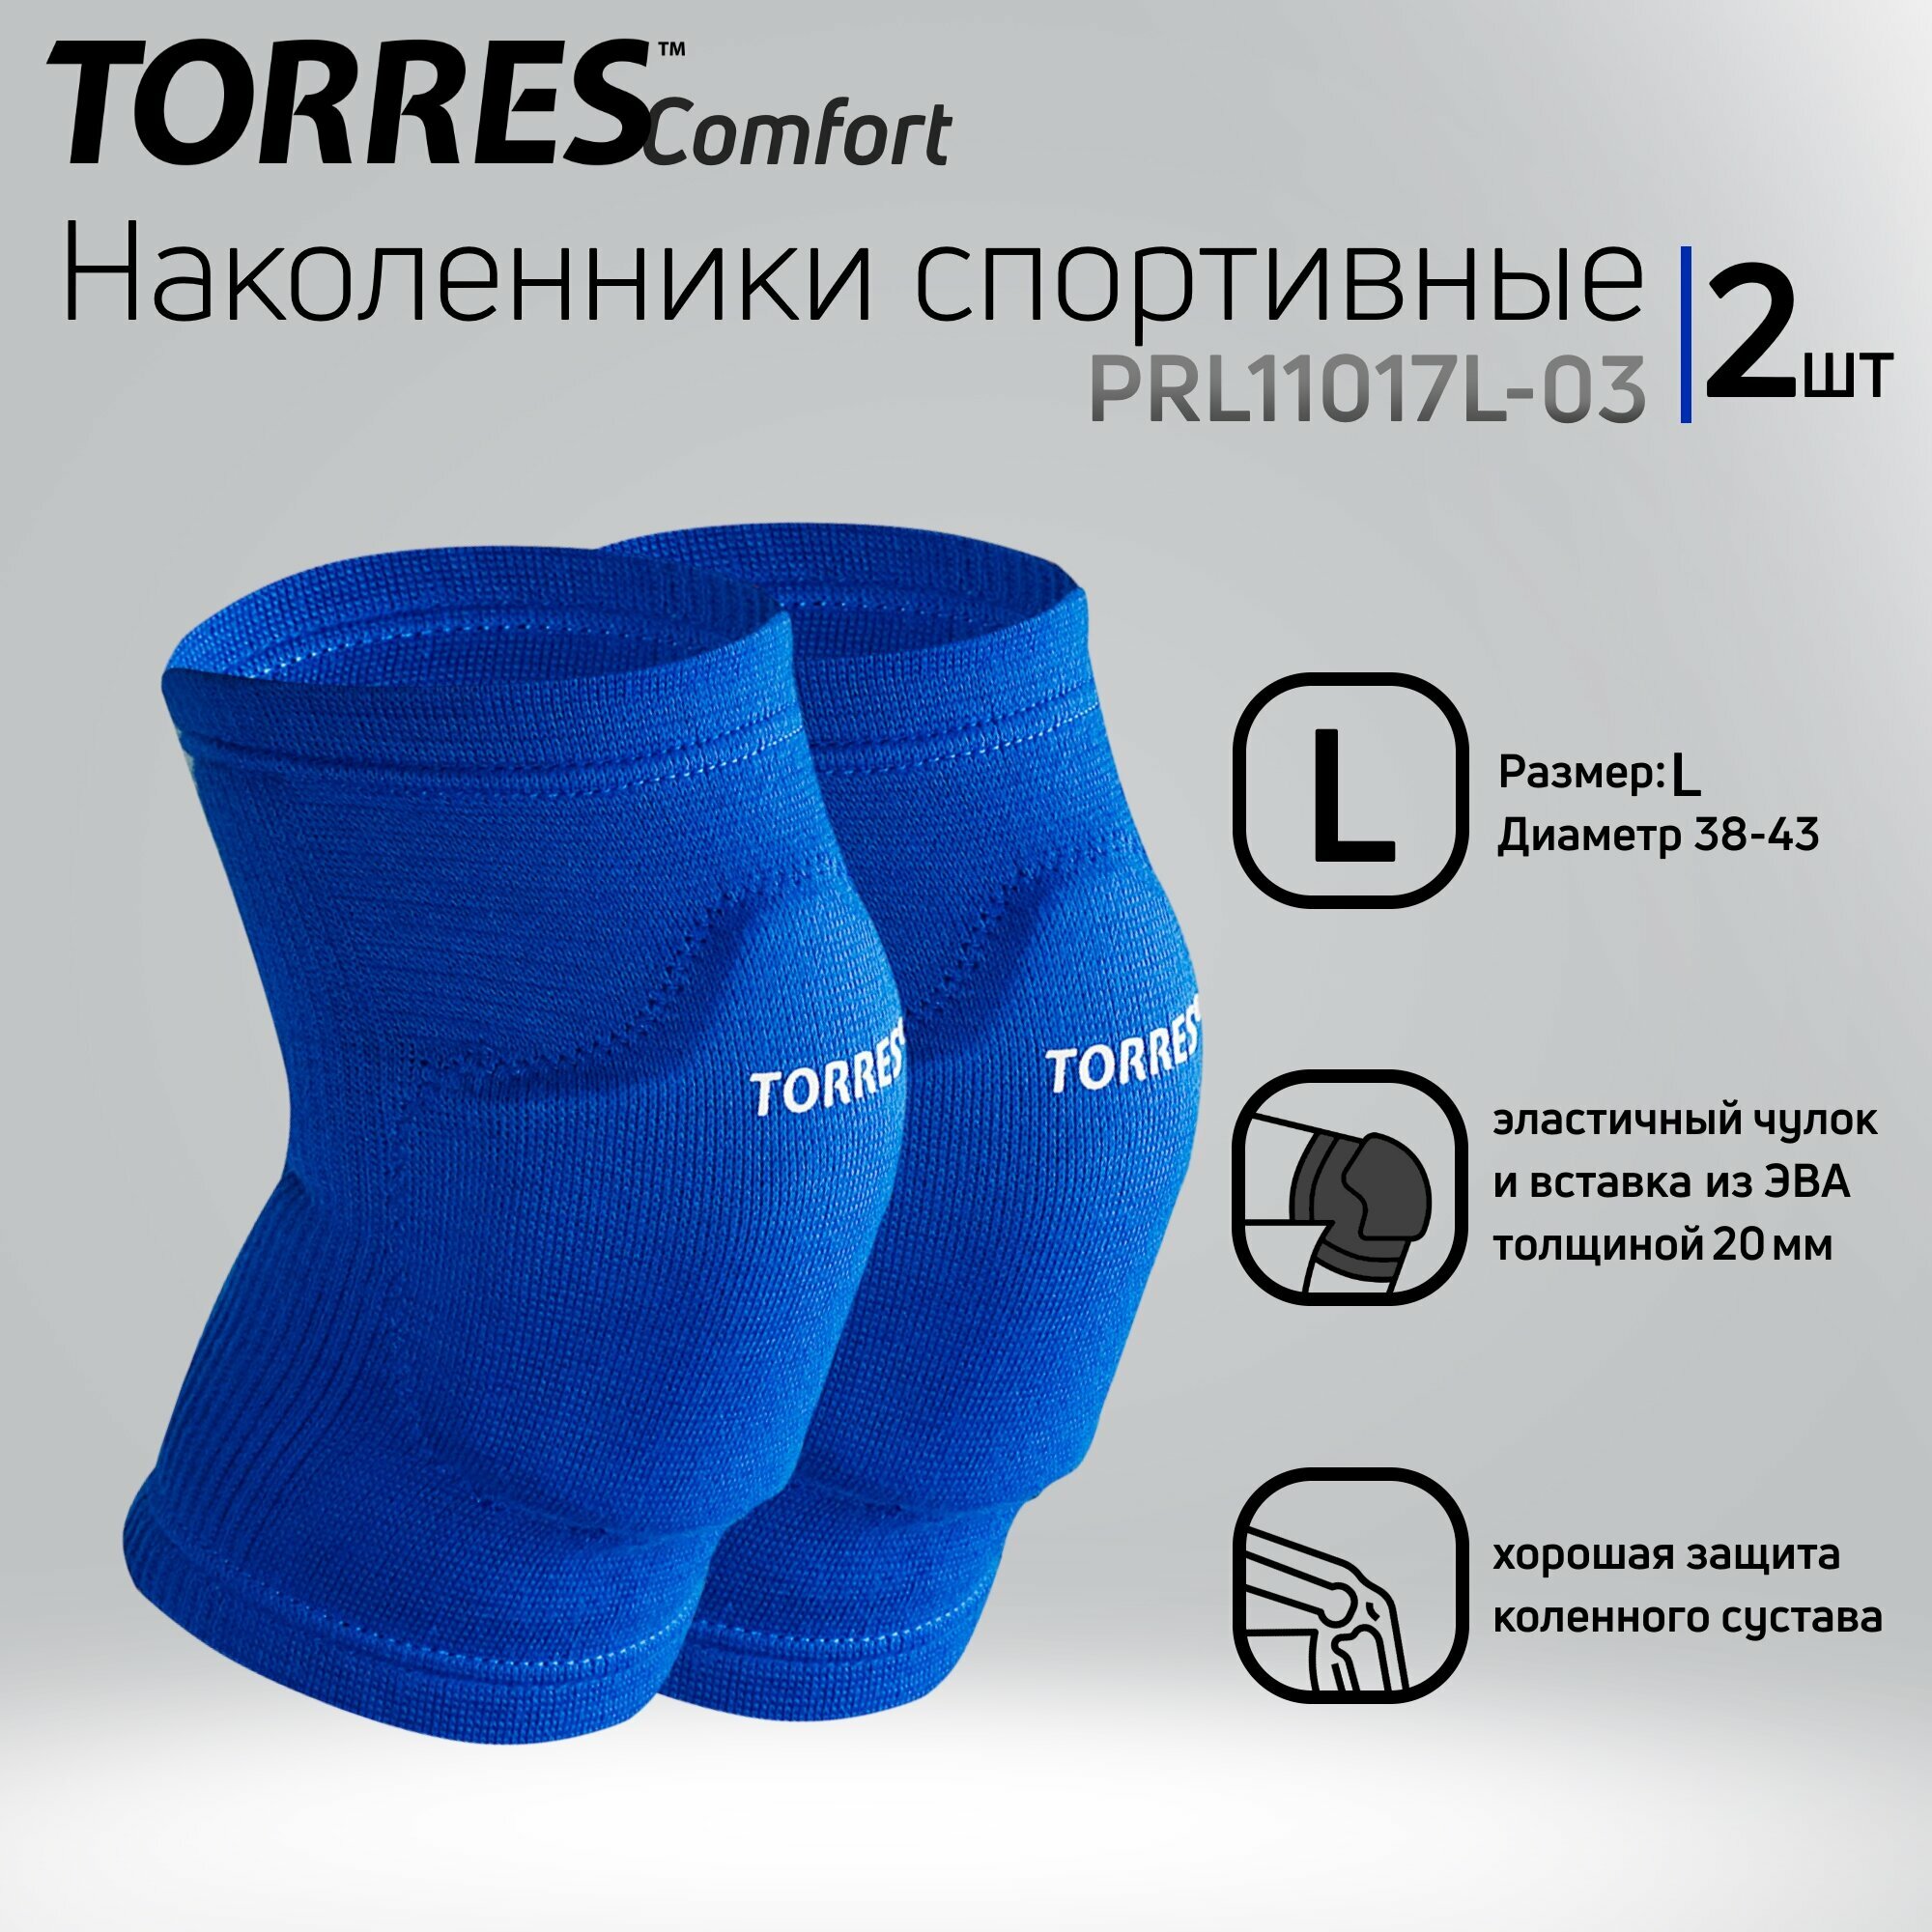 Наколенники спортивные TORRES Comfort, р.L, арт.PRL11017L-03